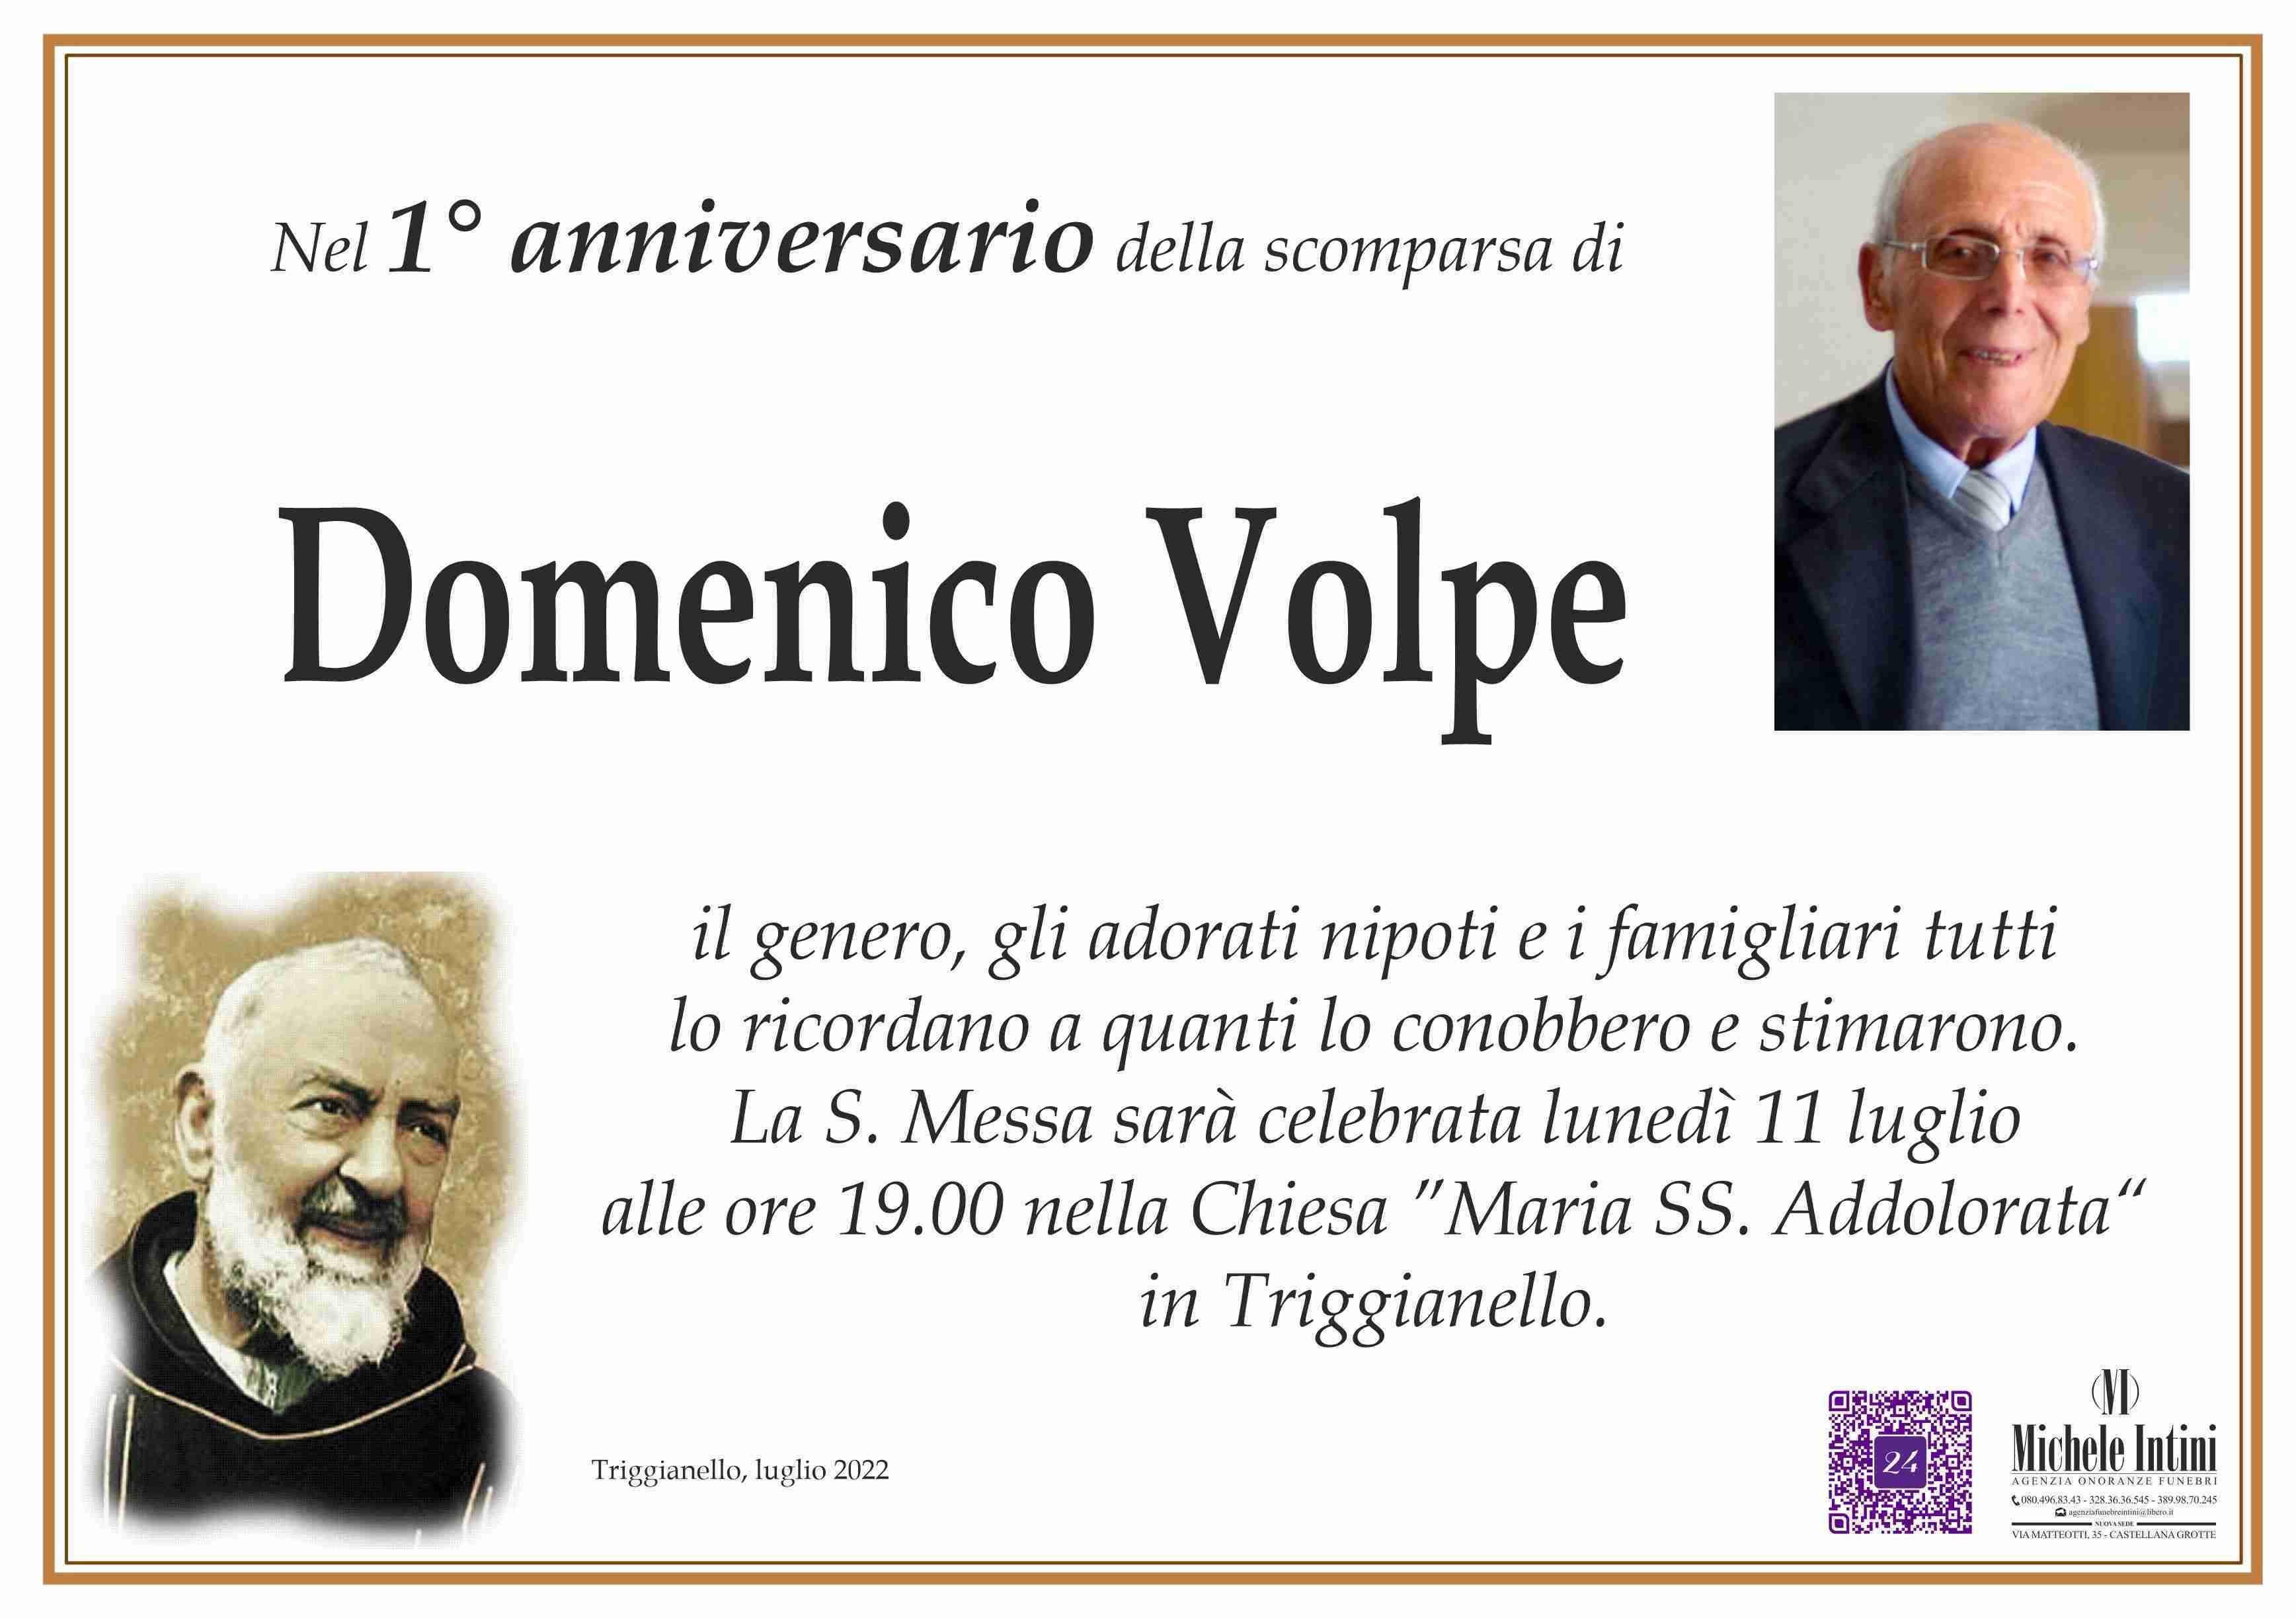 Domenico Volpe